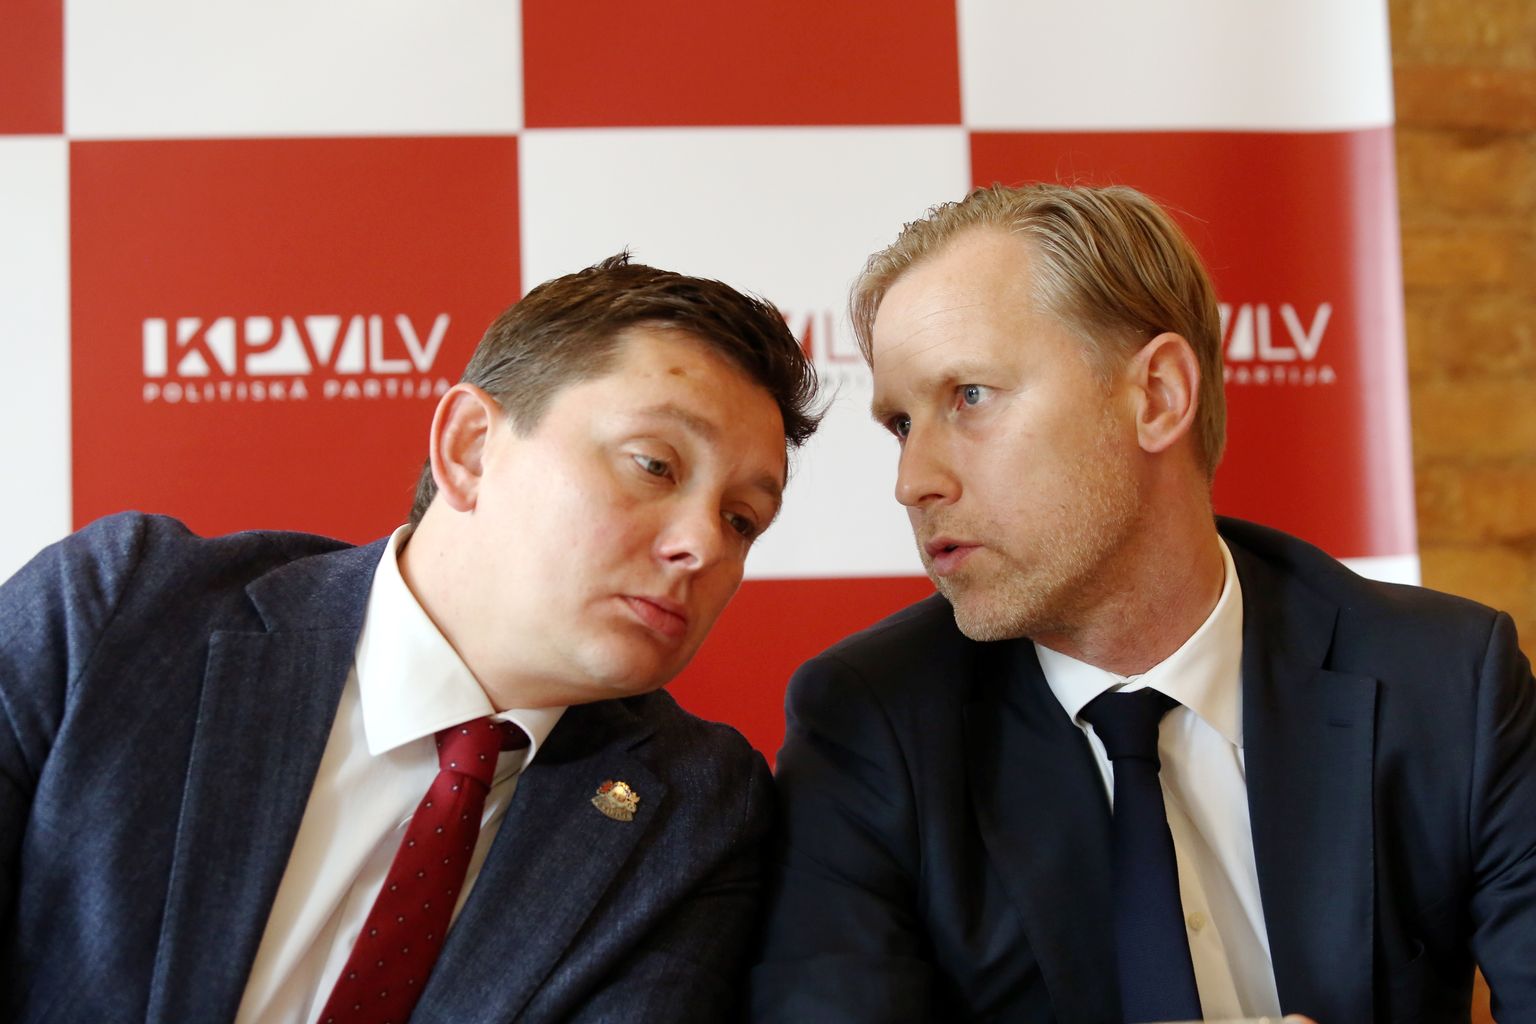 Partijas "KPV LV" valdes priekšsēdētājs, Saeimas deputāts Artuss Kaimiņš (no kreisās) un partijas premjera amata kandidāts Aldis Gobzems piedalās partijas "KPV LV" preses konferencē.